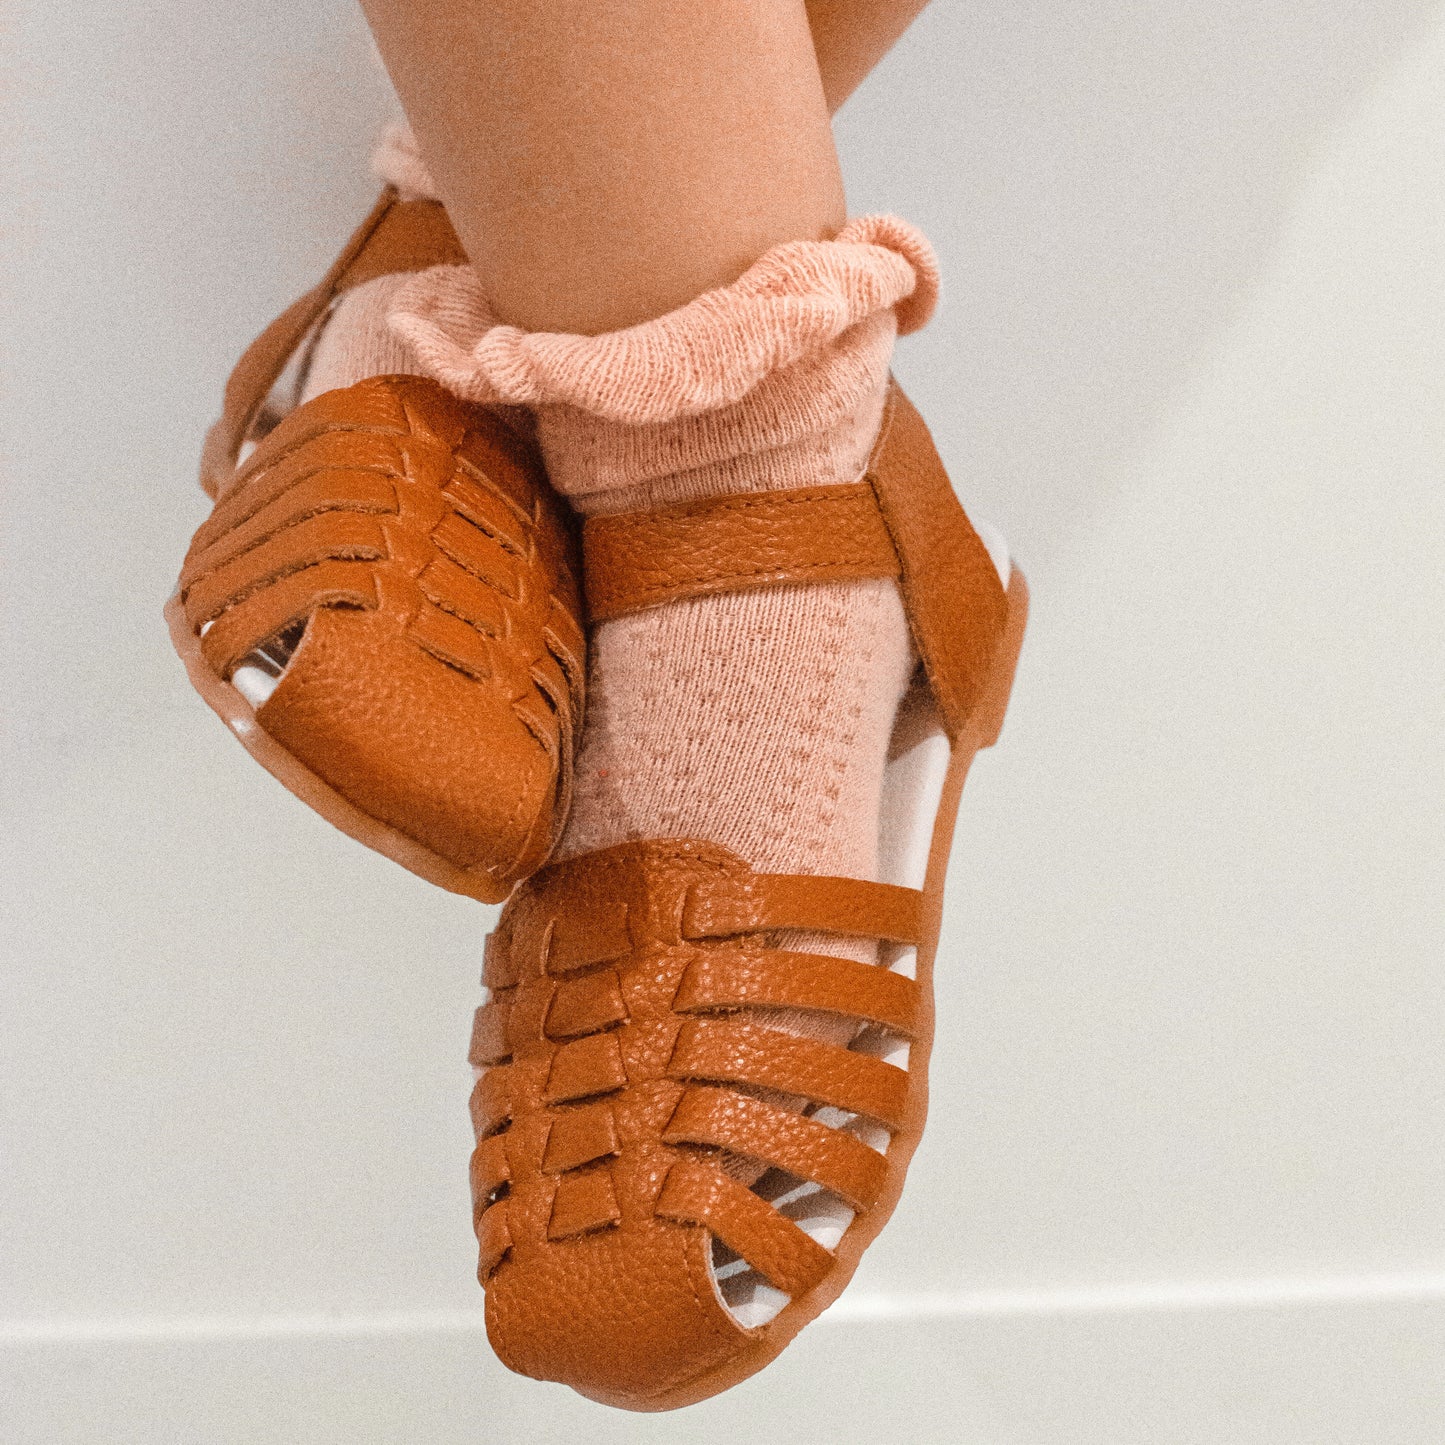 Remi Weave Sandal - Tan